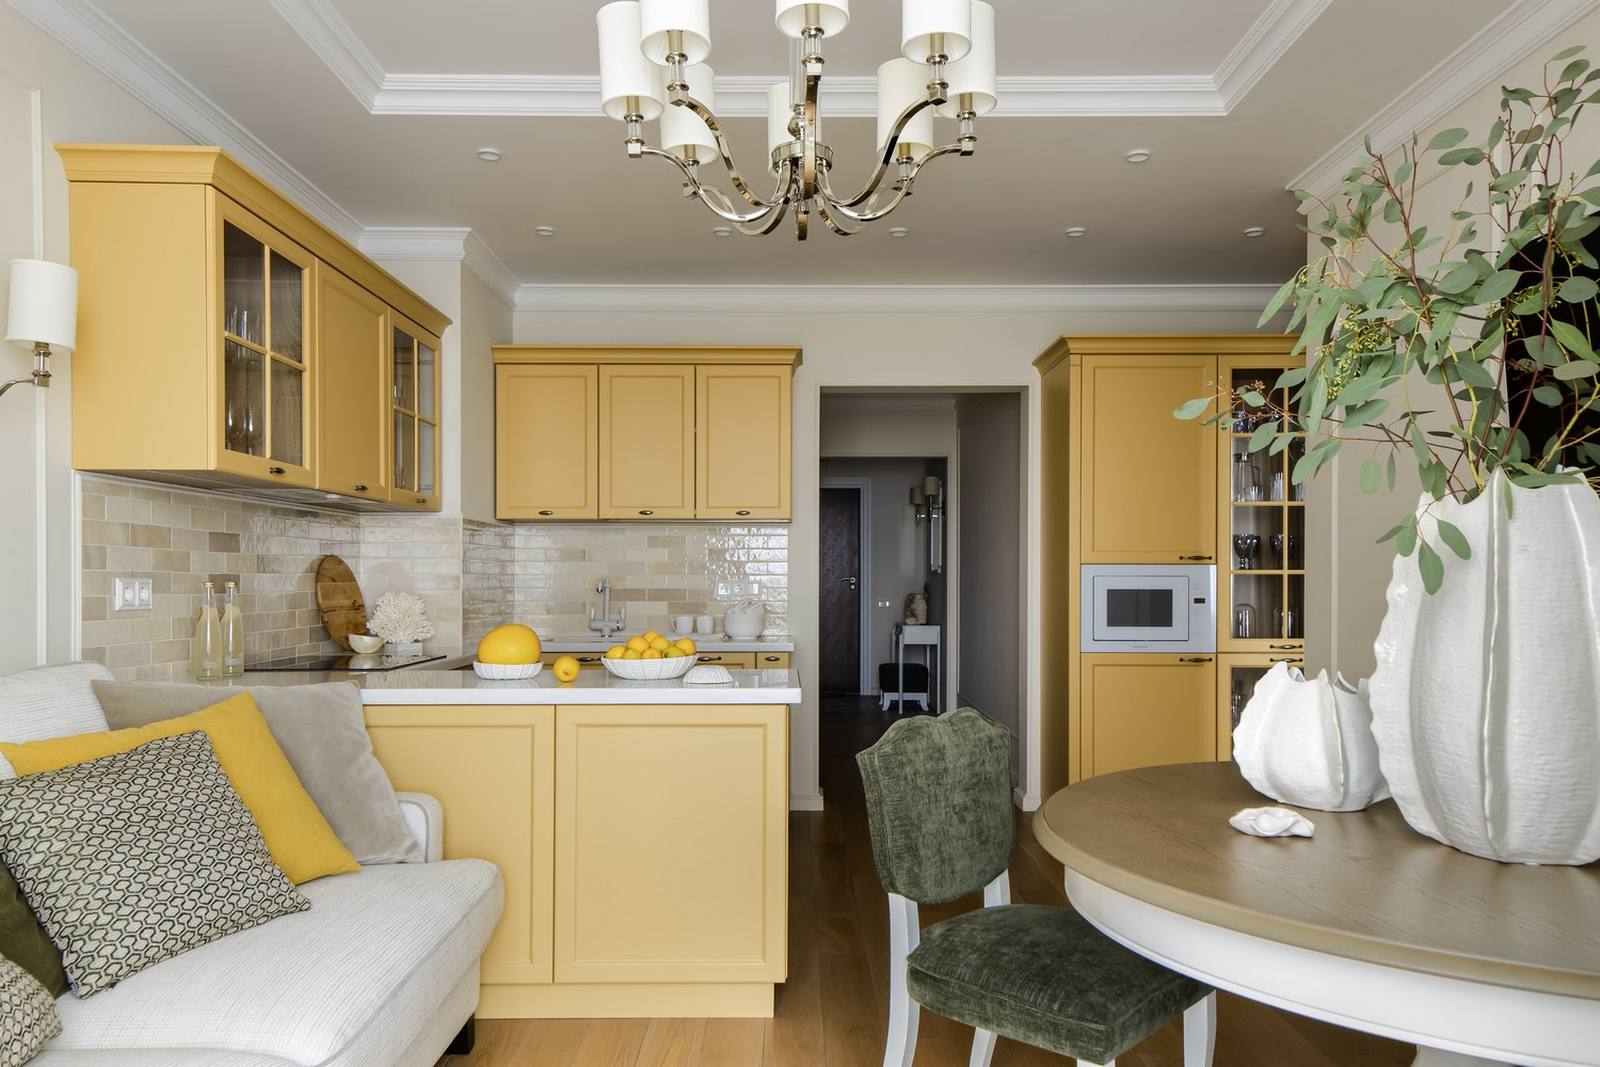 Vì căn hộ của cặp đôi có diện tích không quá rộng rãi, chỉ hơn 50m² nên nhà thiết kế nội thất quyết định chọn thiết kế mở cho khu vực phòng khách, phòng bếp và góc ăn uống nhỏ xinh.